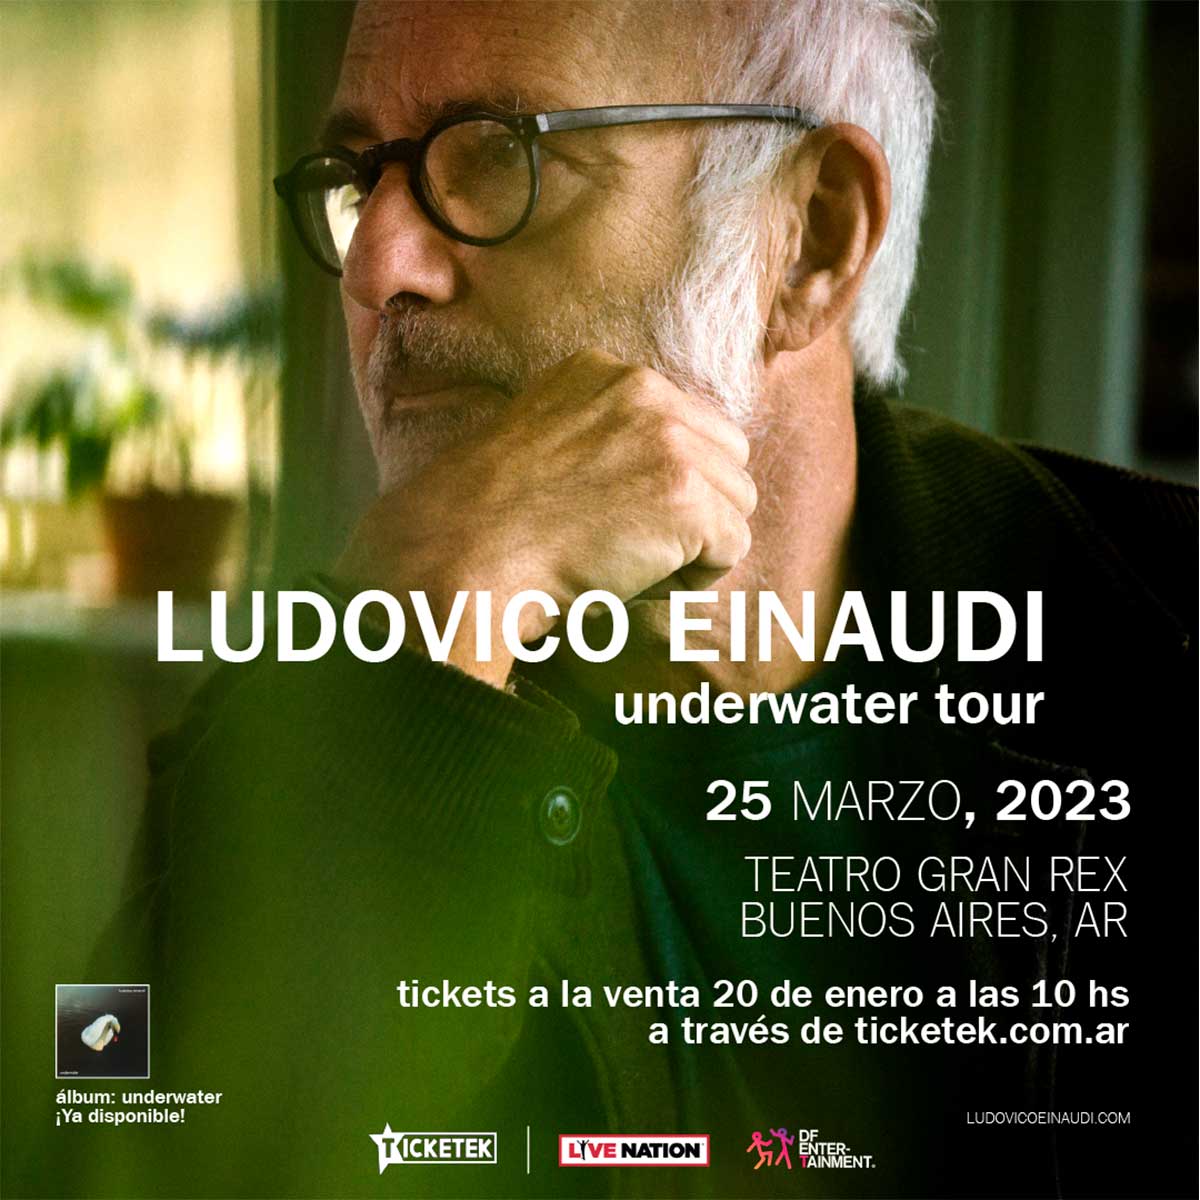 Ludovico Einaudi en Argentina